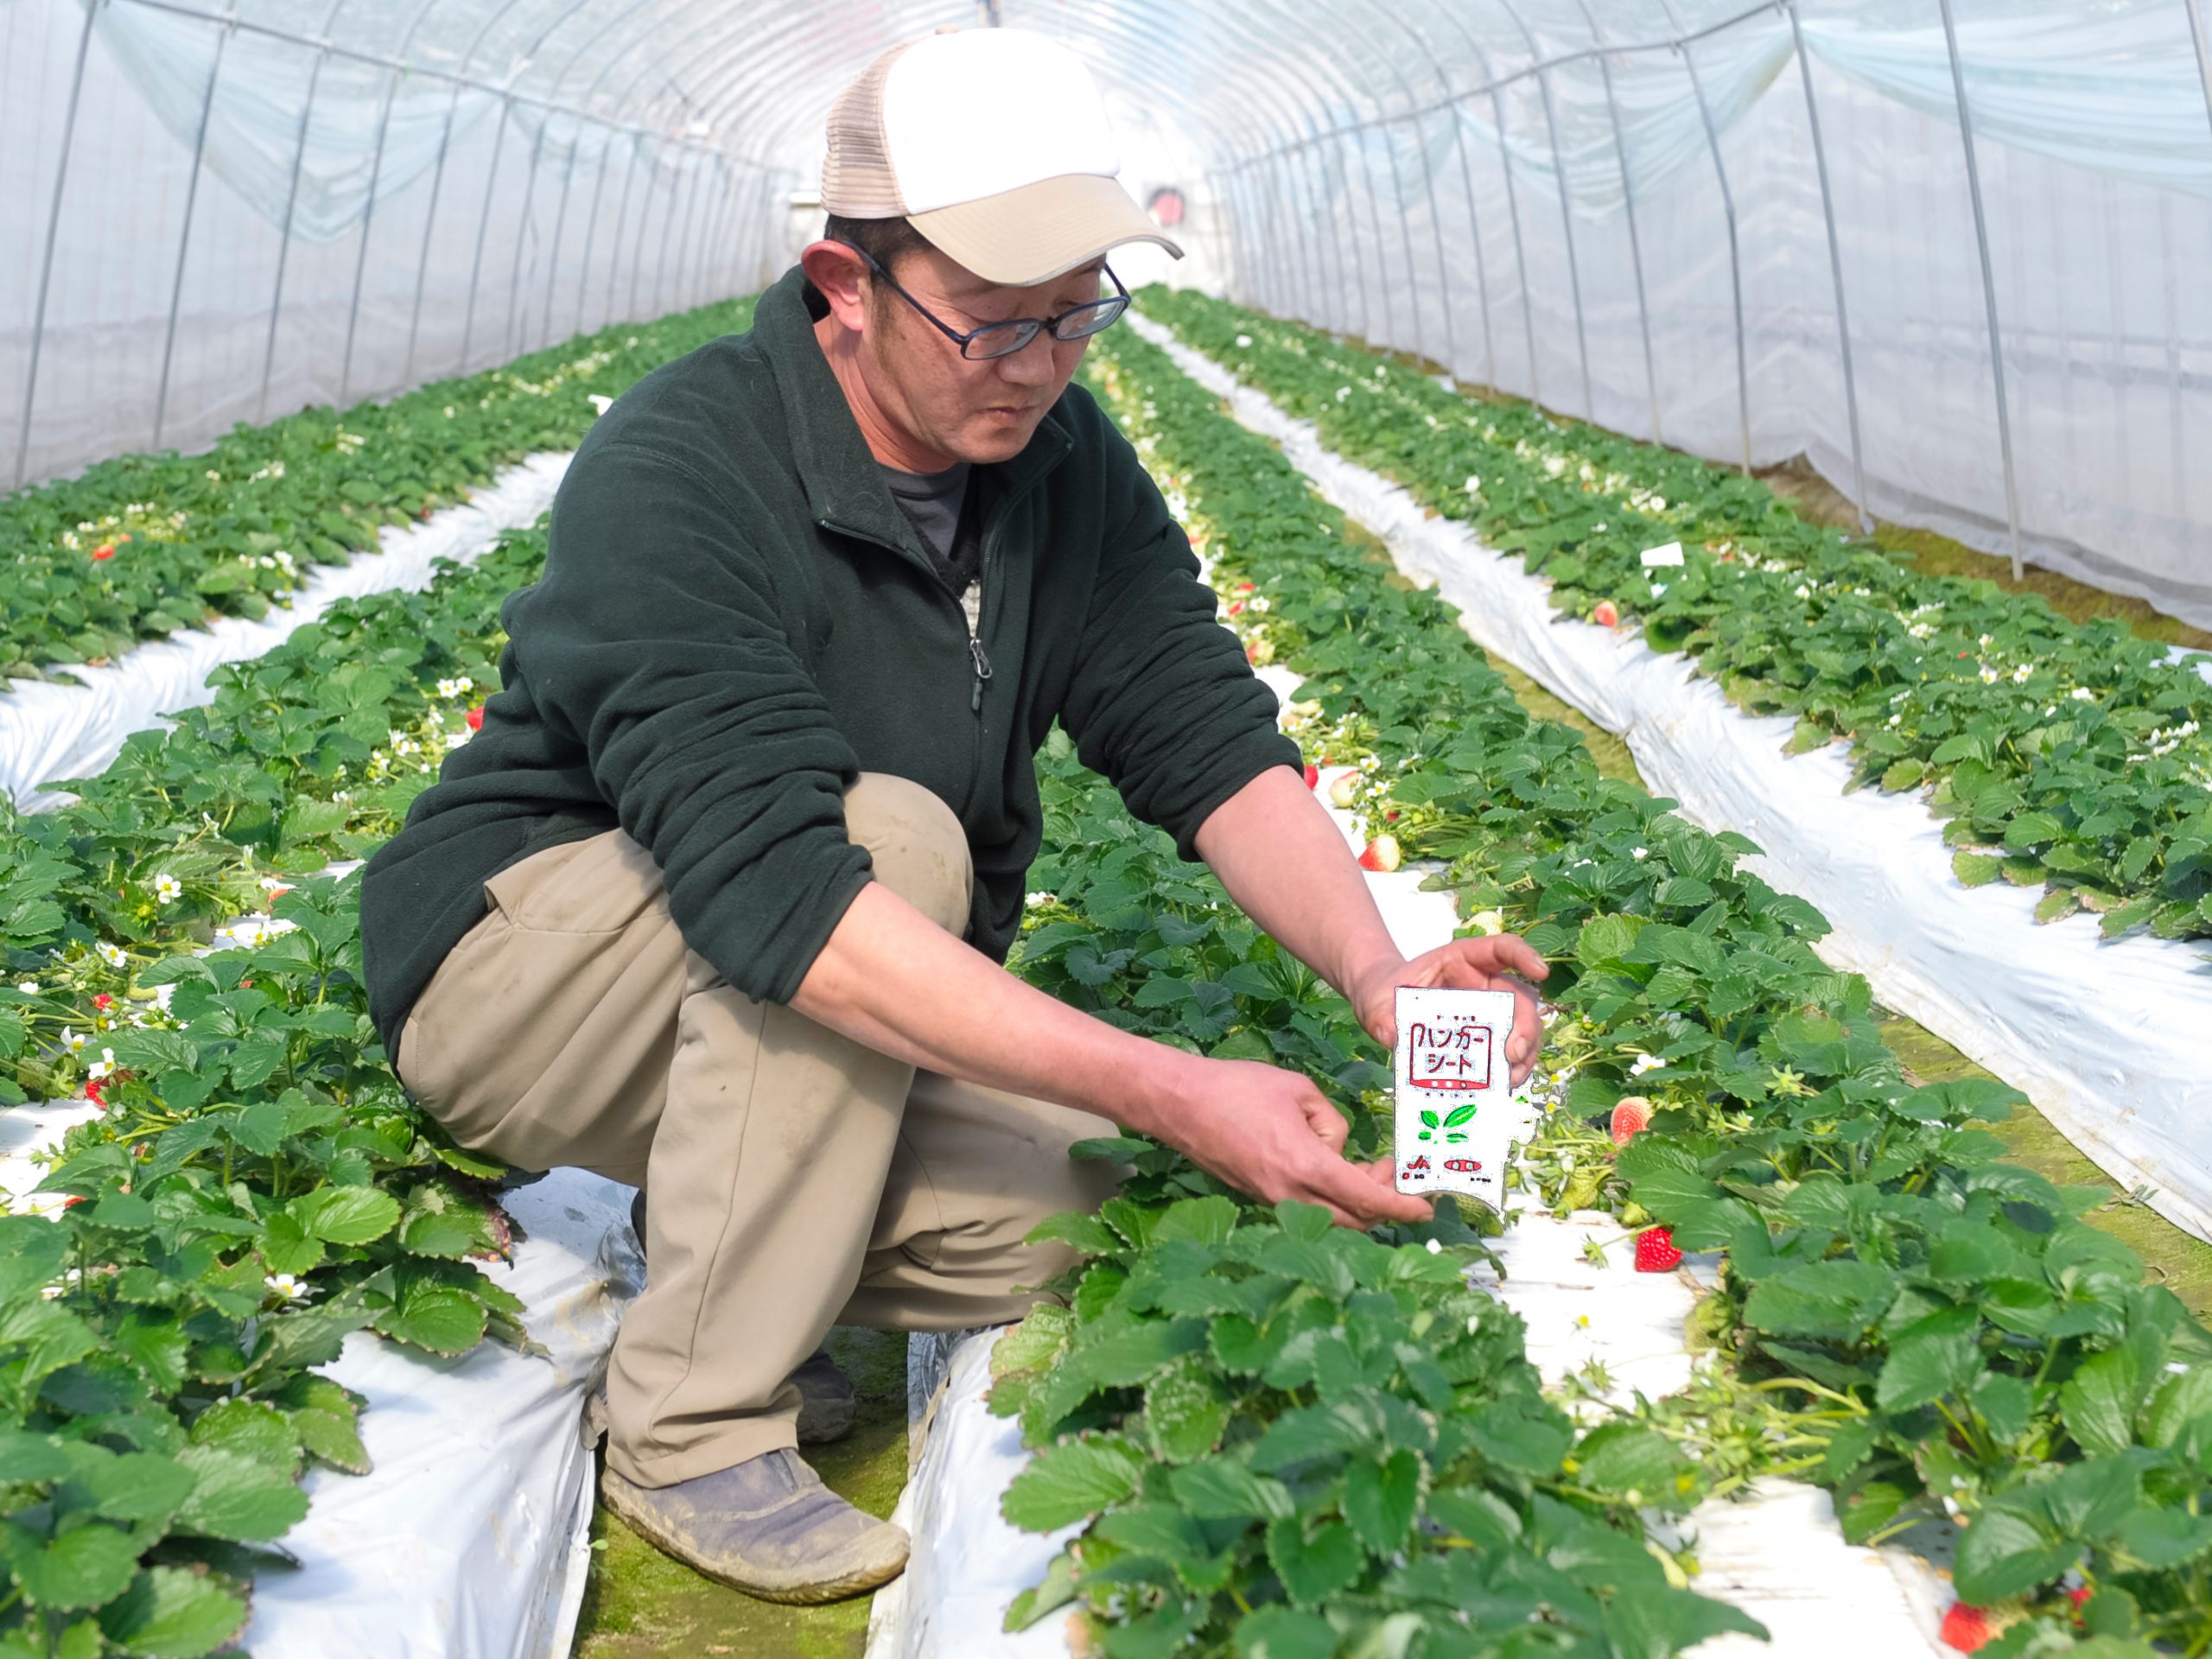 「ミヤコバンカー®」でハダニ類の防除を安定化。天敵利用で埼玉ブランドイチゴを育てる